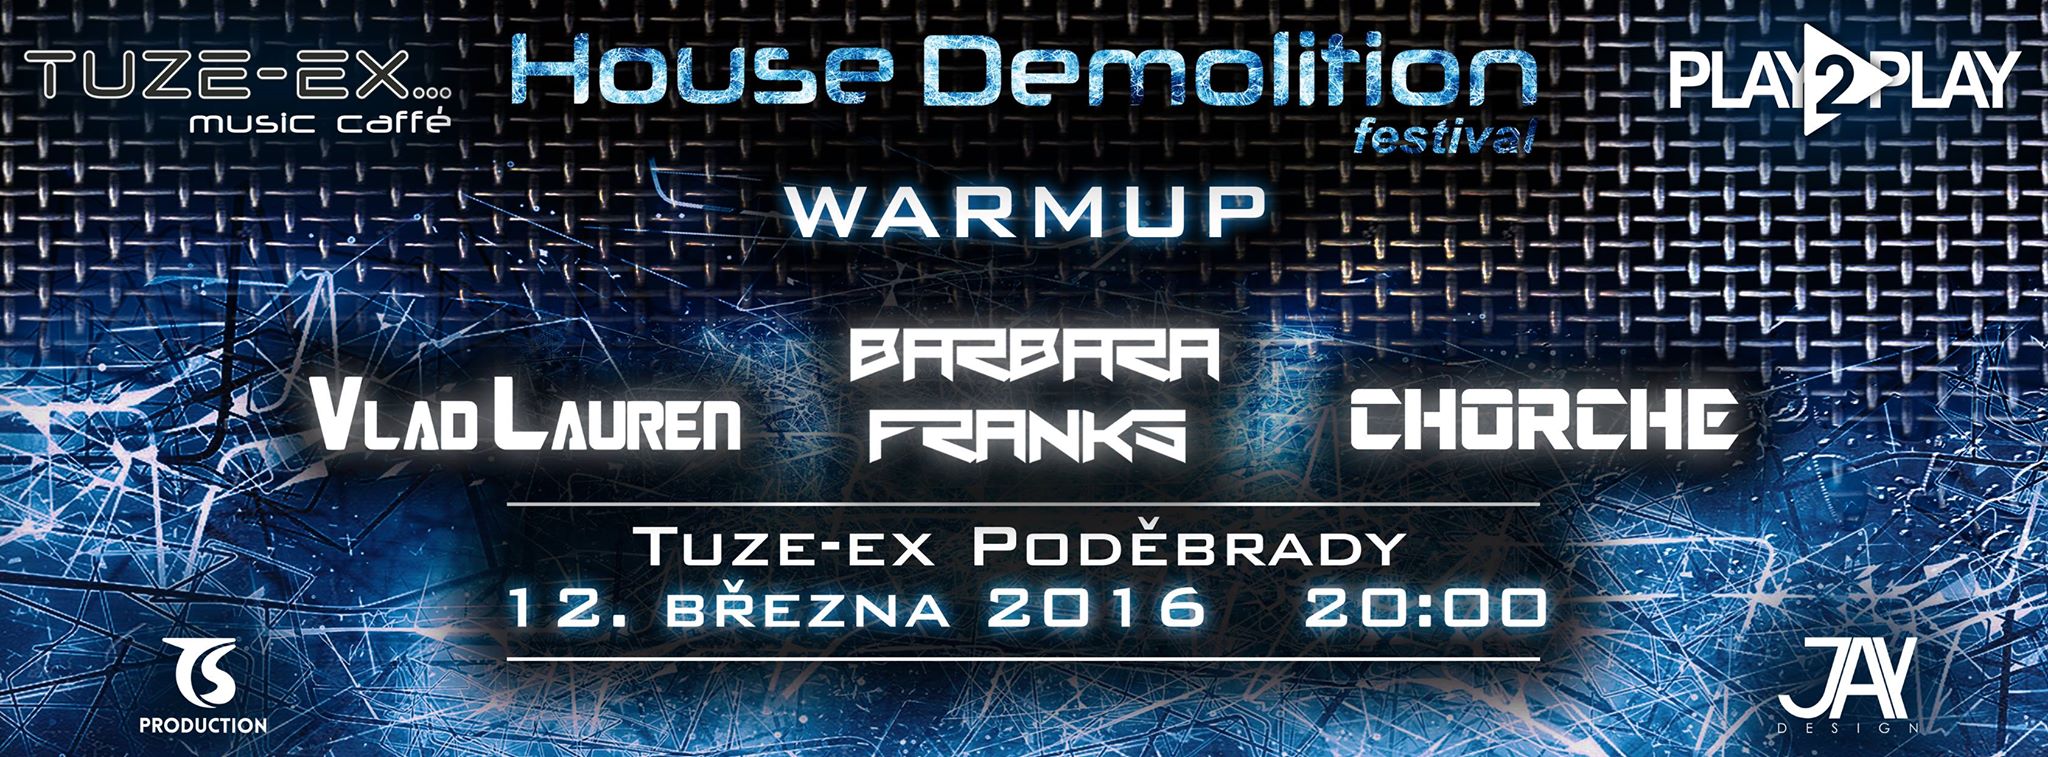 House Demolition Festival WarmUP - 12.3.2016 - Tuzex Poděbrady